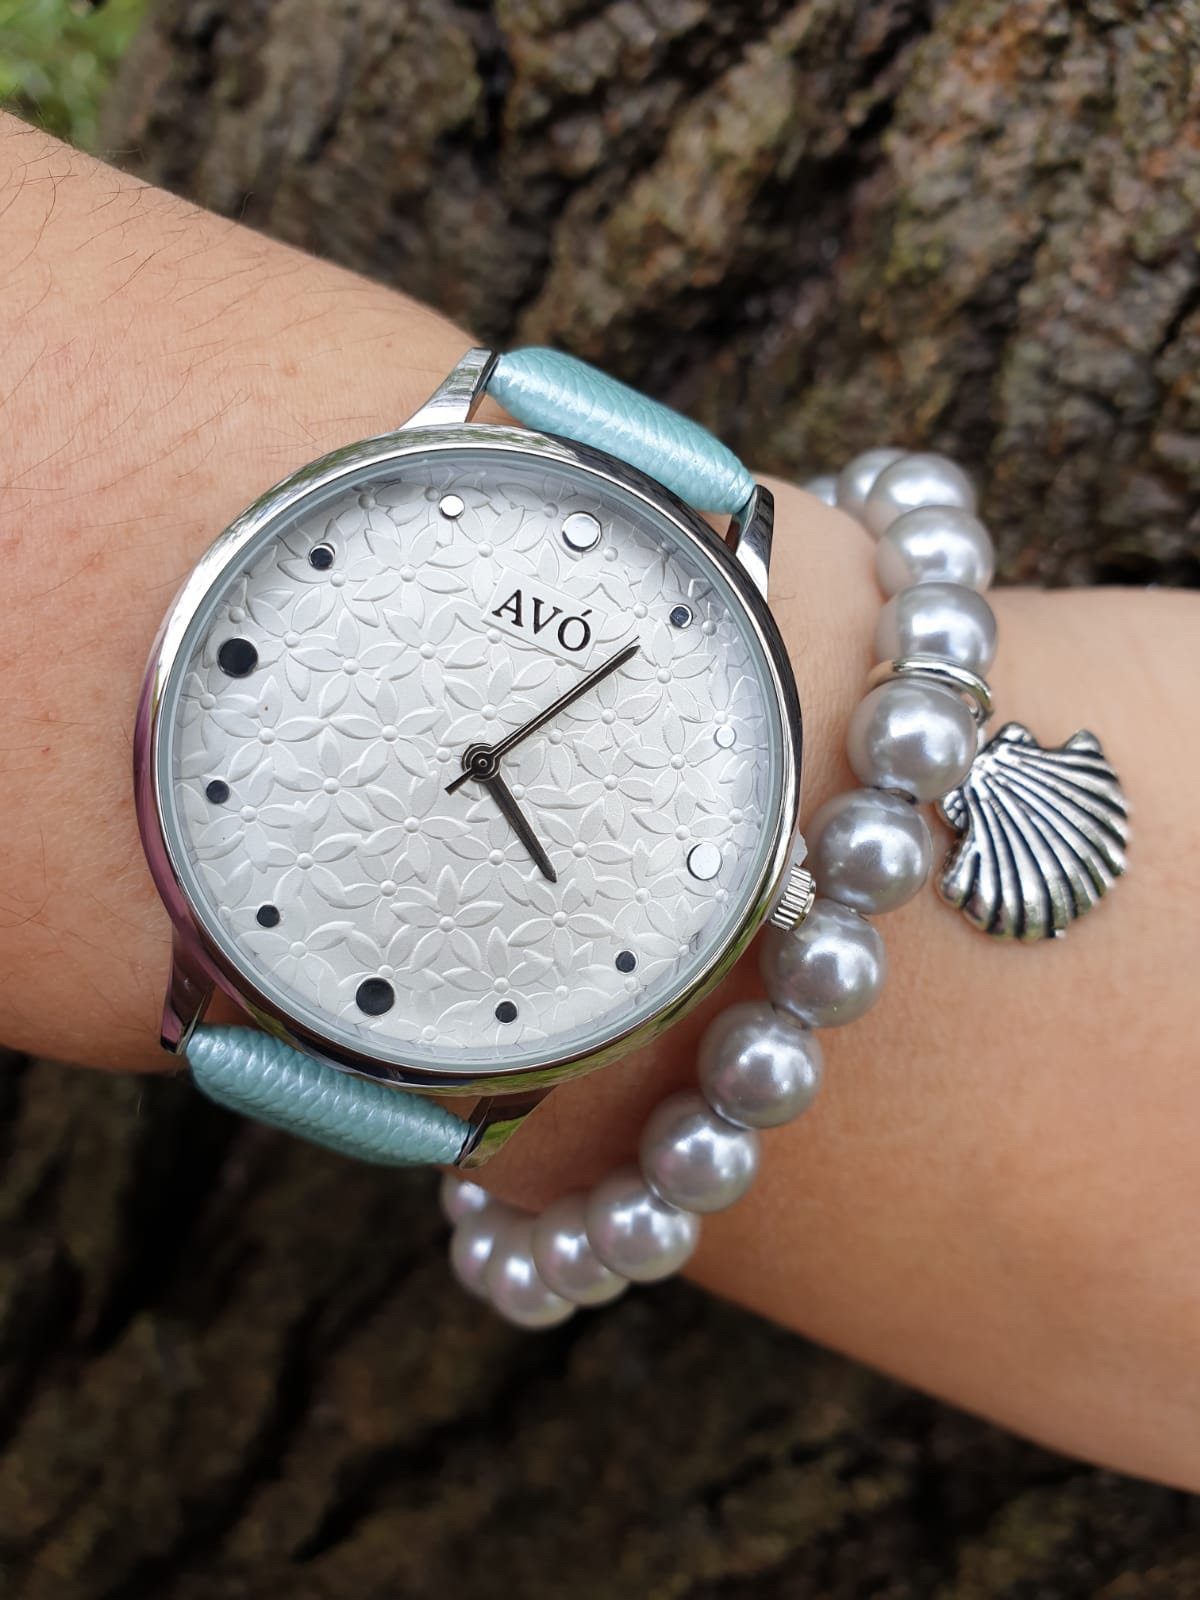 Relógio avó garden ecopele + oferta de uma pulseira